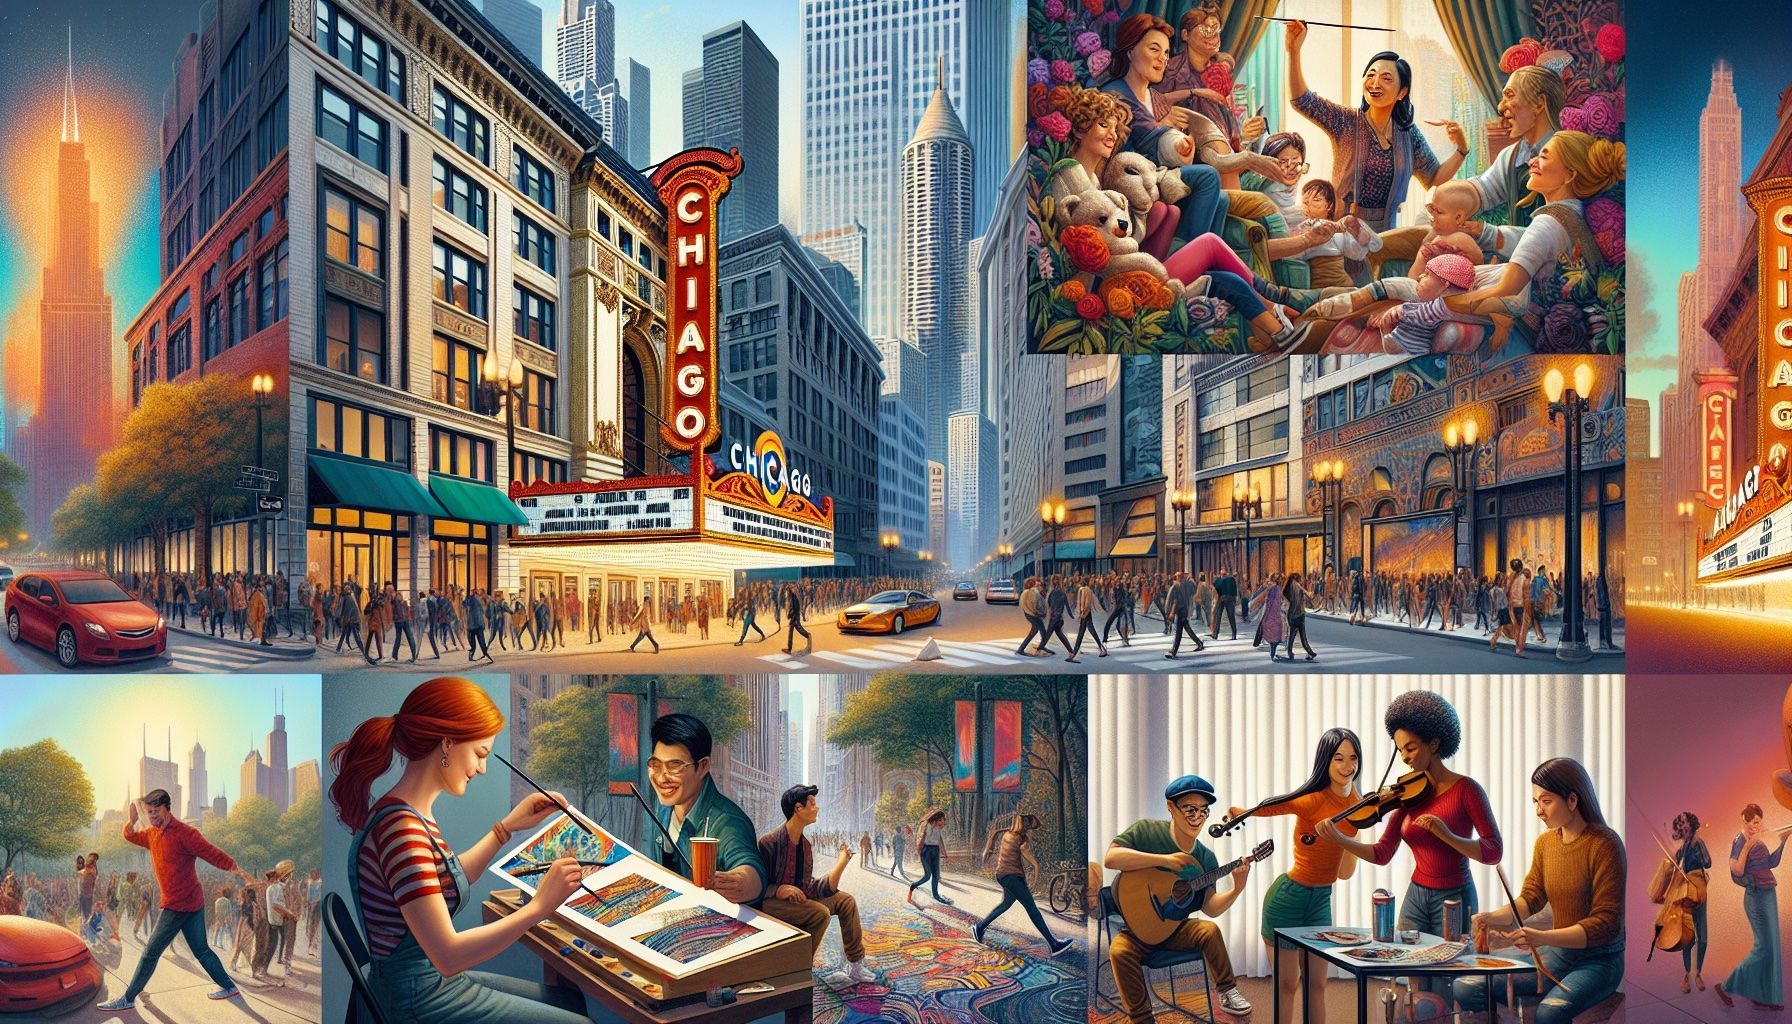 Vibrant arts and culture scene in Chicago